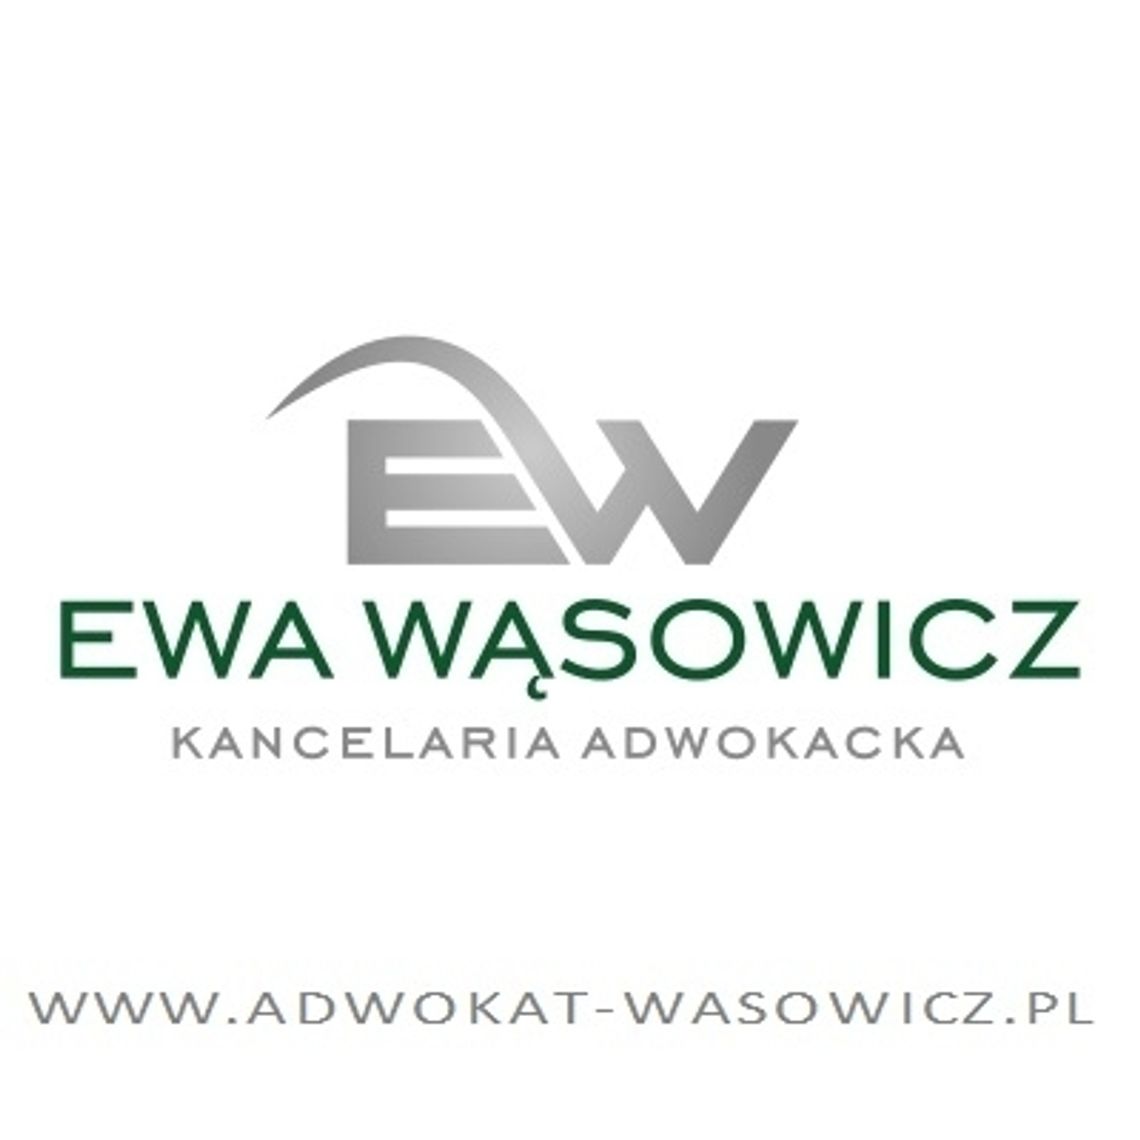 Adwokat Ewa Wąsowicz - Kancelaria Adwokacka we Wrocławiu